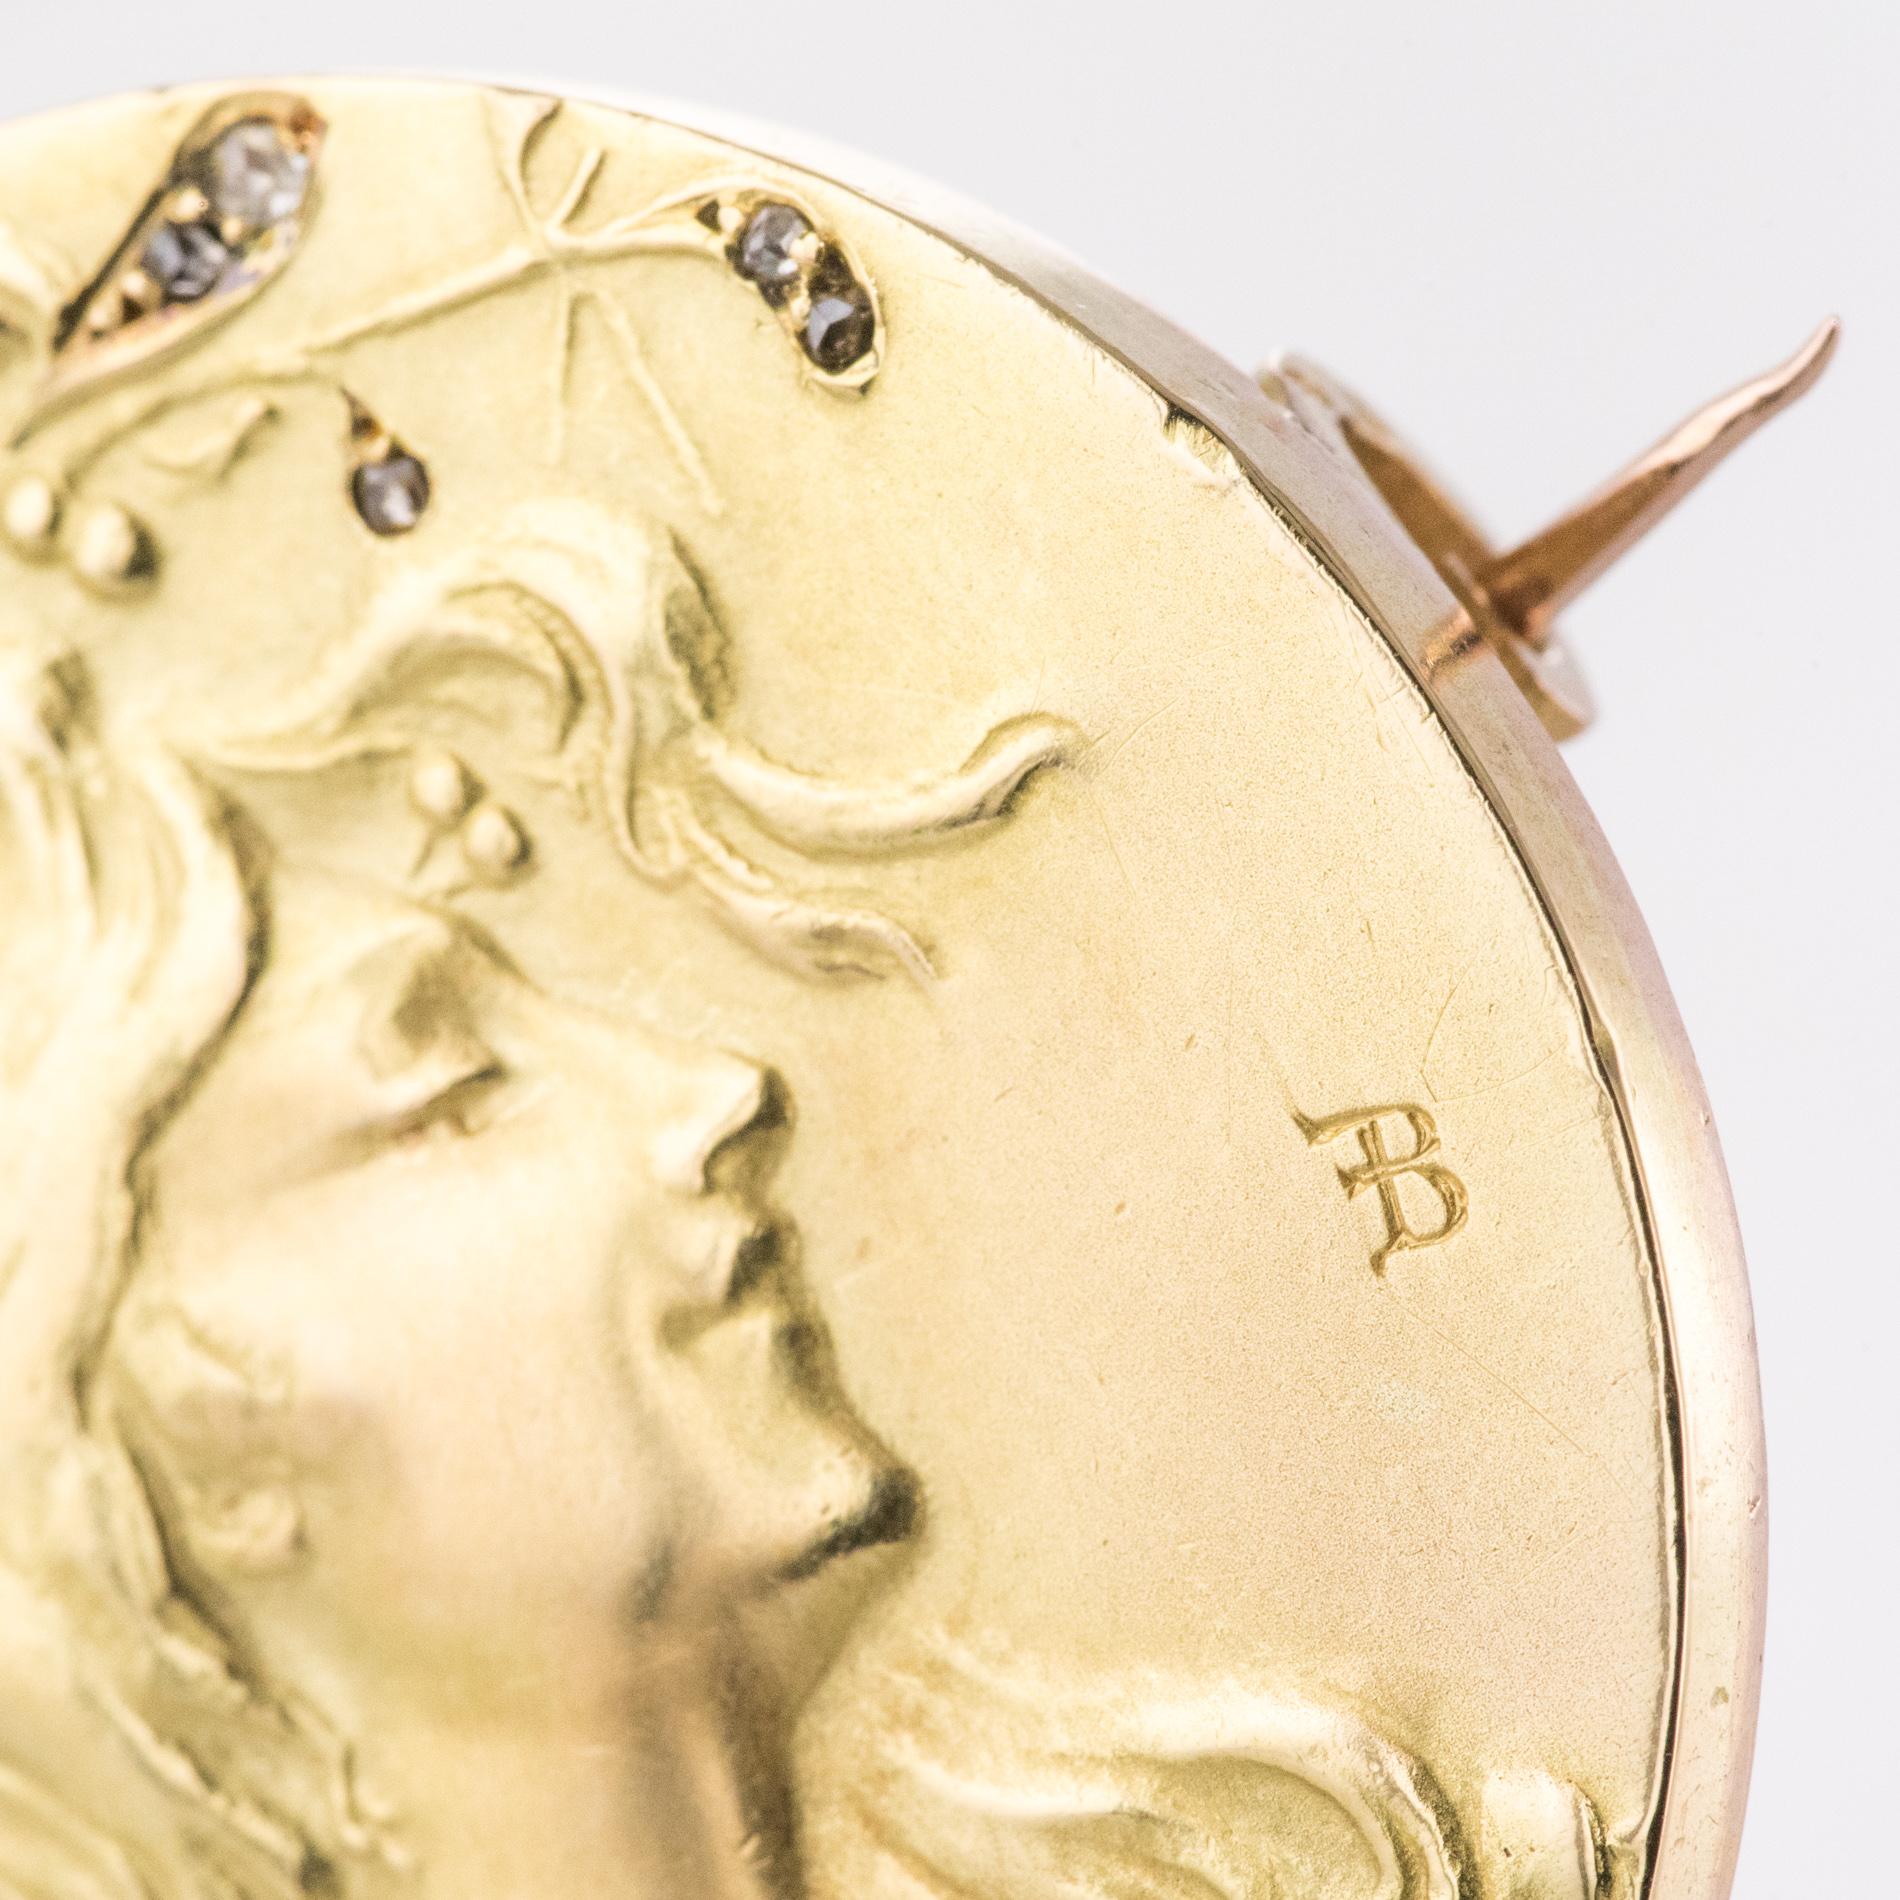 French Becker Art Nouveau Rose-Cut Diamond 18 Karat Yellow Gold Brooch For Sale 2